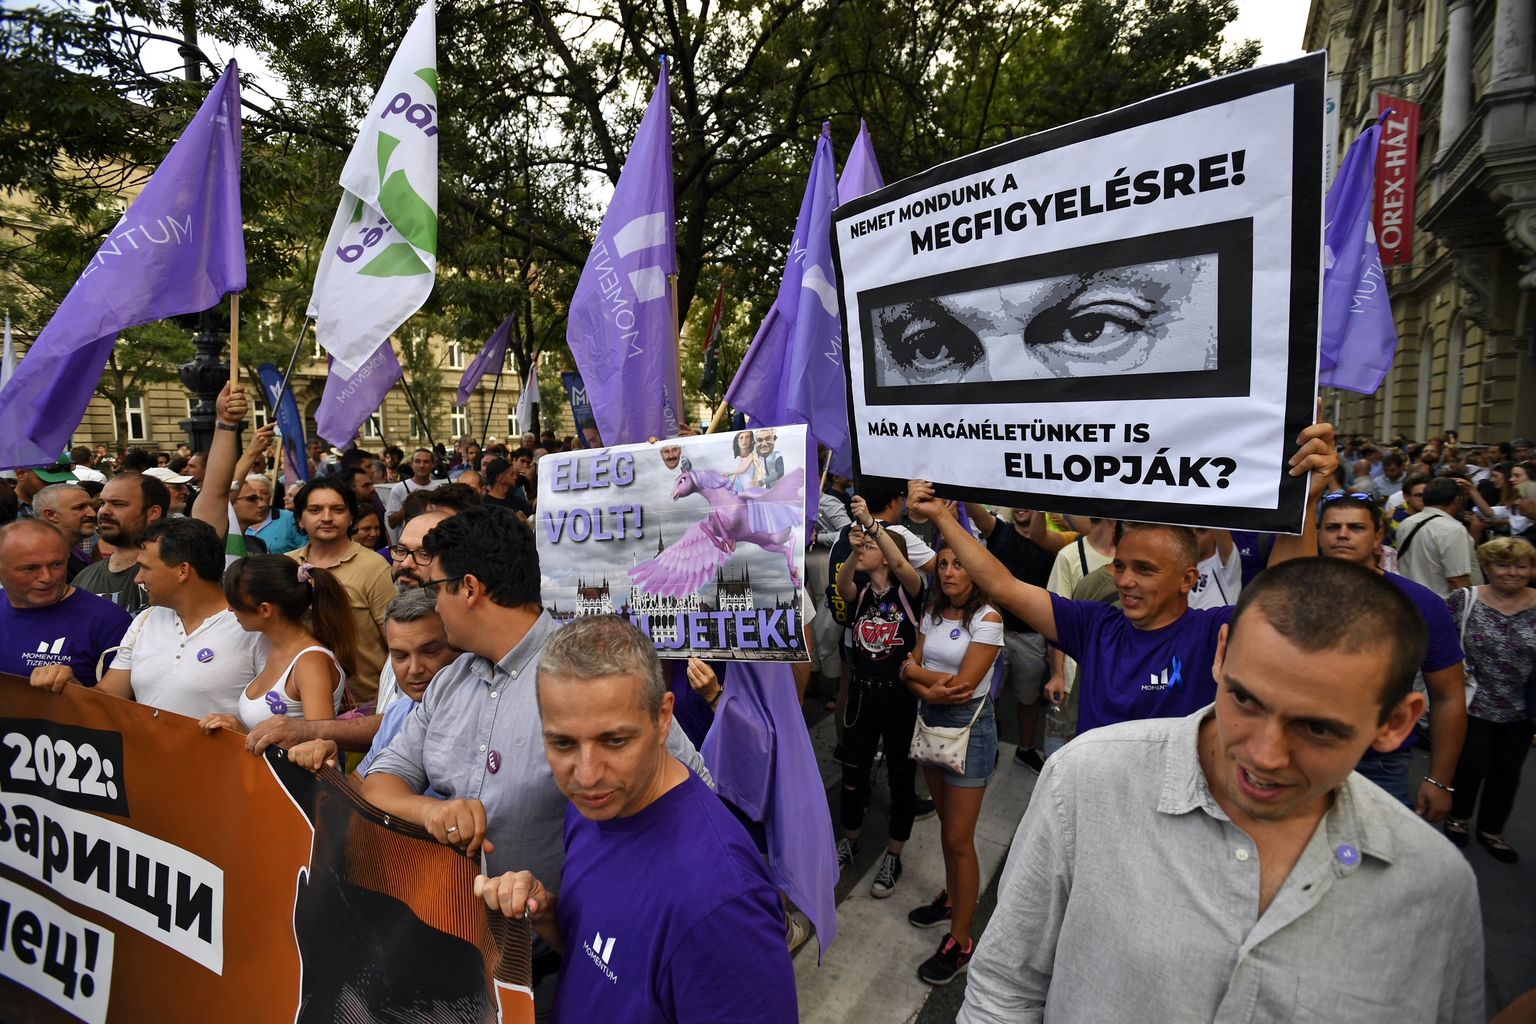 Ungarlased avaldamas valitsusele protesti seoses nuhkvara Pegasus kasutamisega. Foto on illustratiivne.